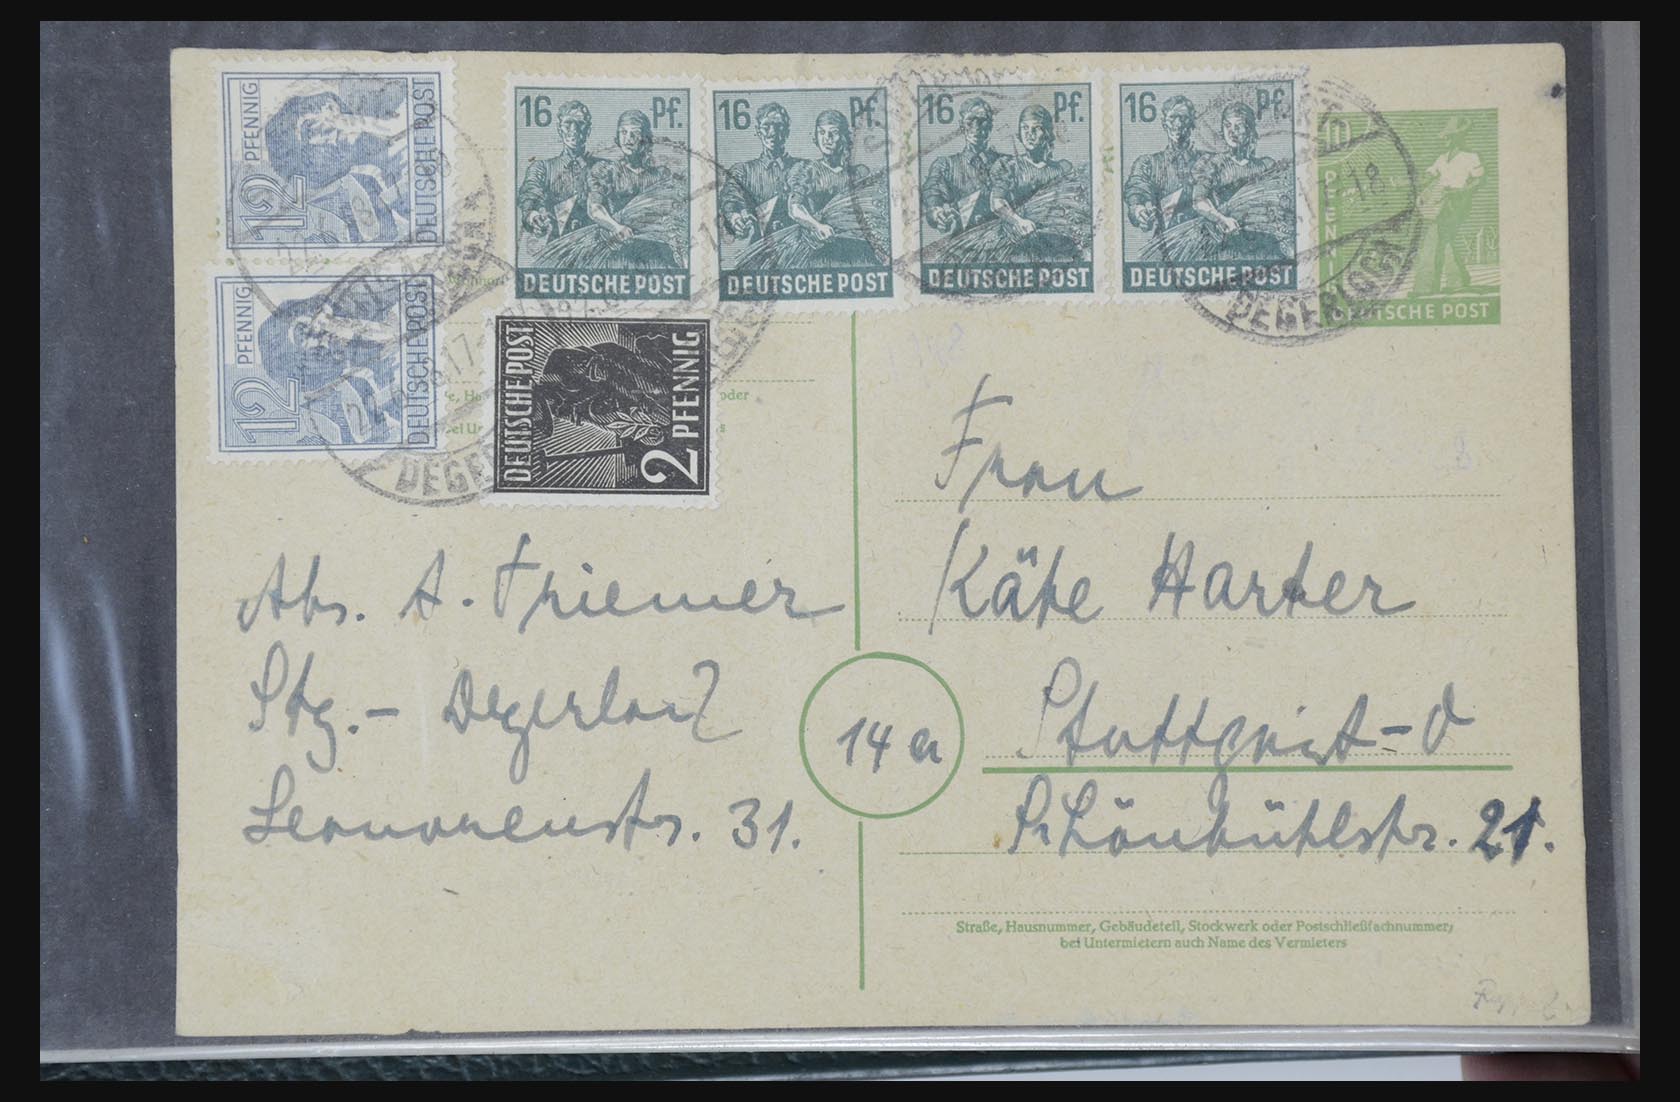 31581 027 - 31581 Duitsland brieven en FDC's 1945-1981.